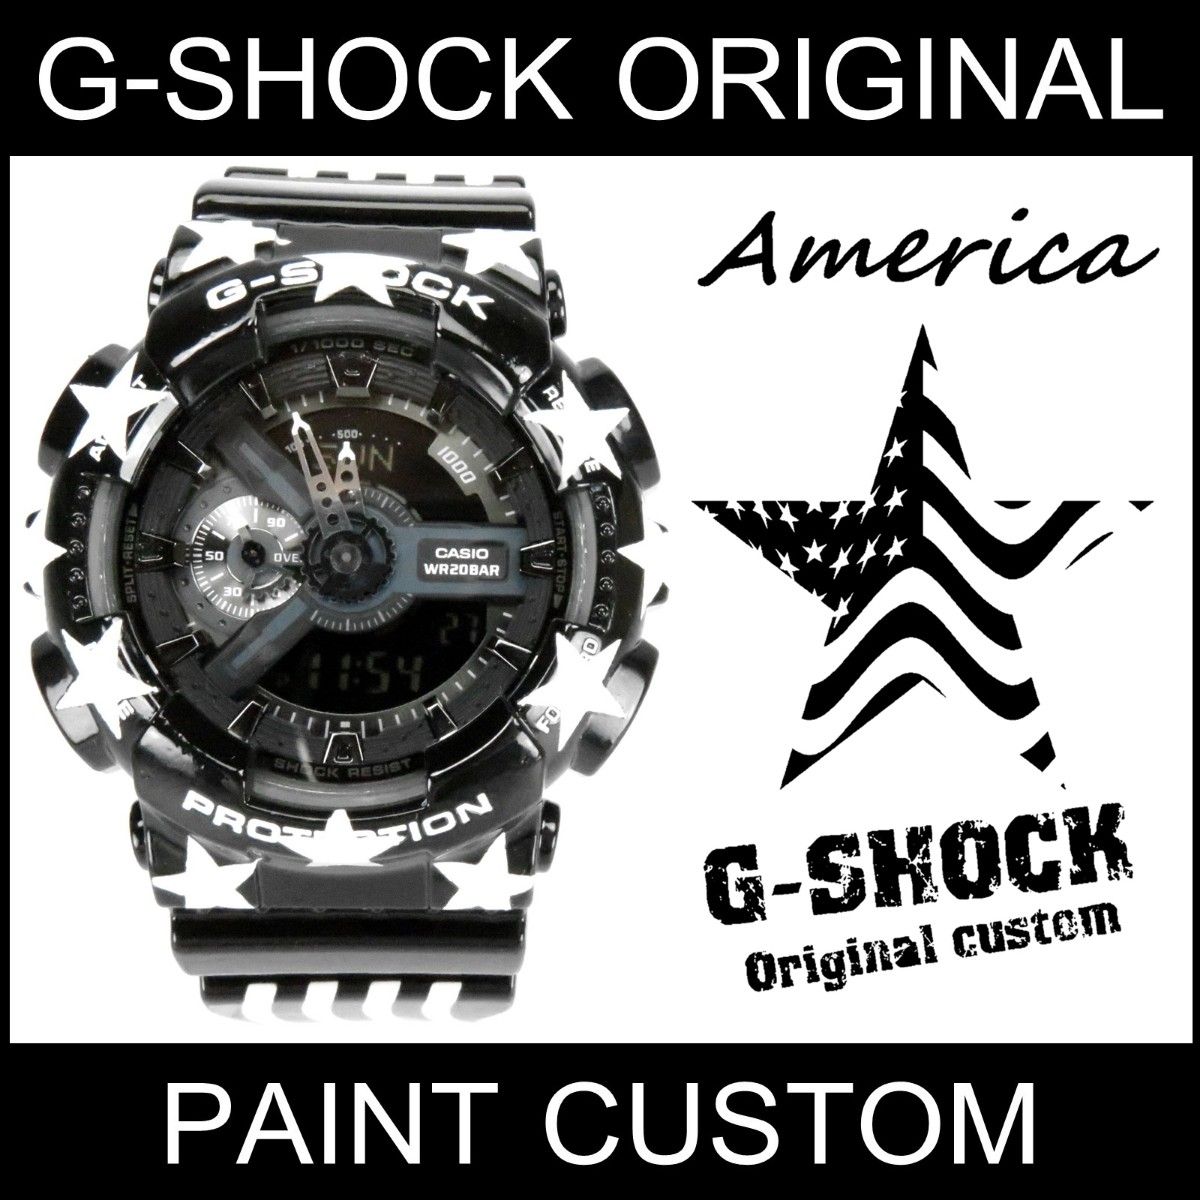 ○送料無料○ Gショック ベルト 交換 G-shock 腕時計 バンド ウレタン 互換品 DW-5600